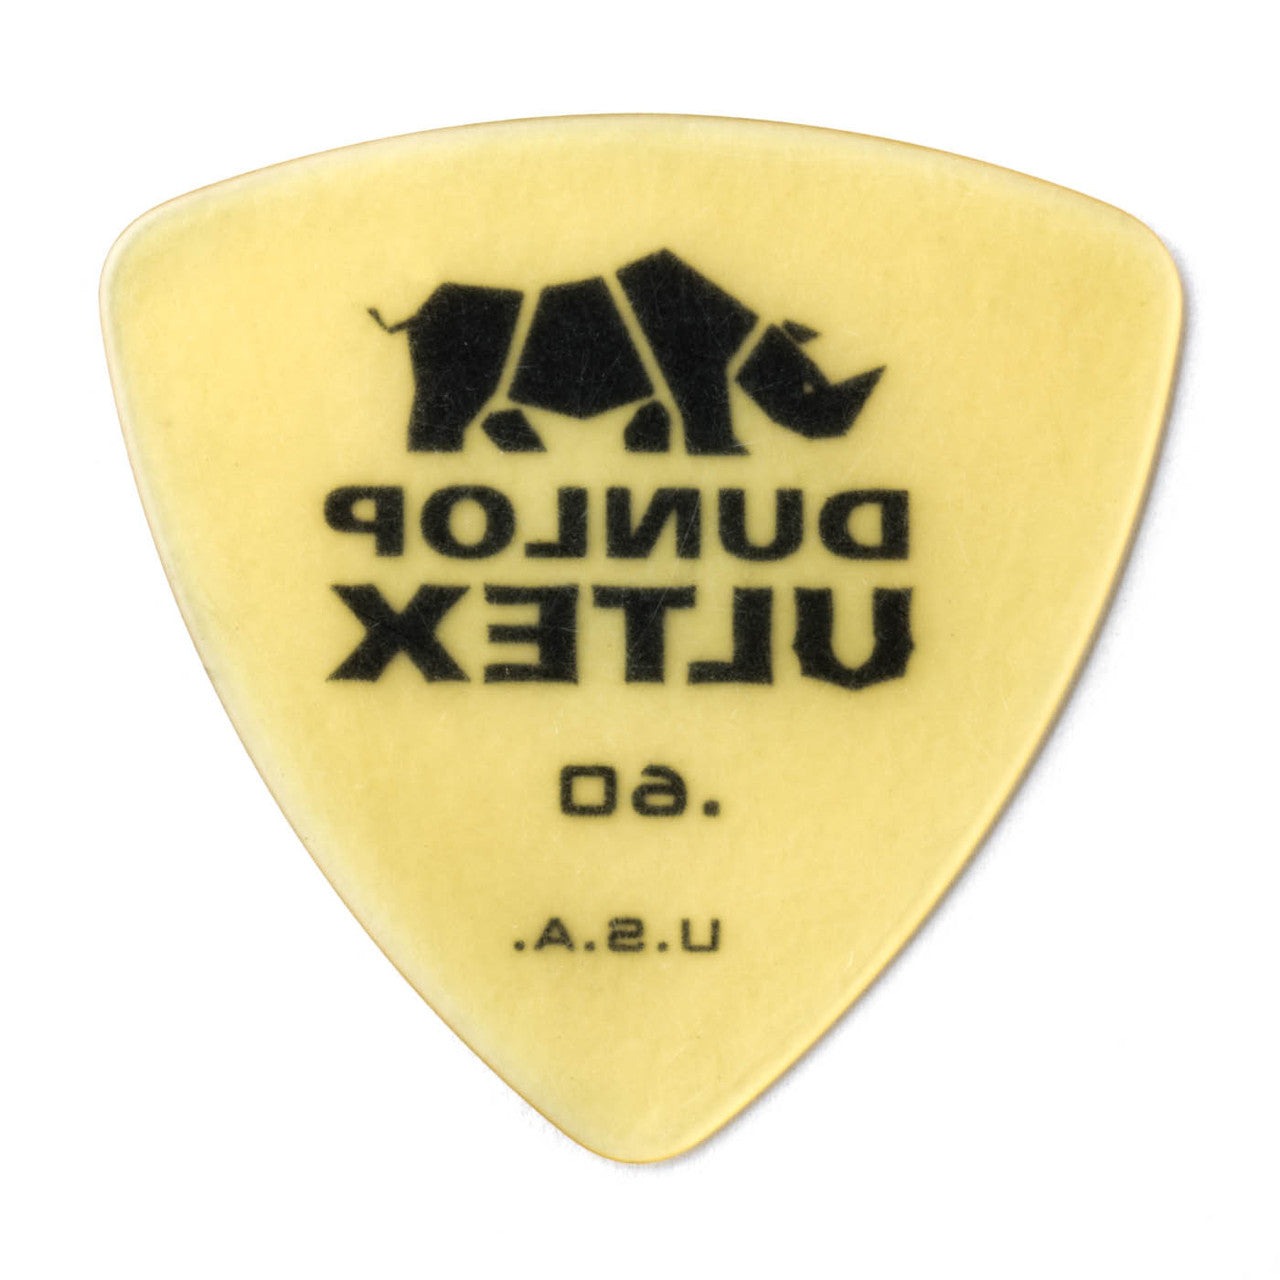 Dunlop Ultex® Triangle Pick .60mm Gauge